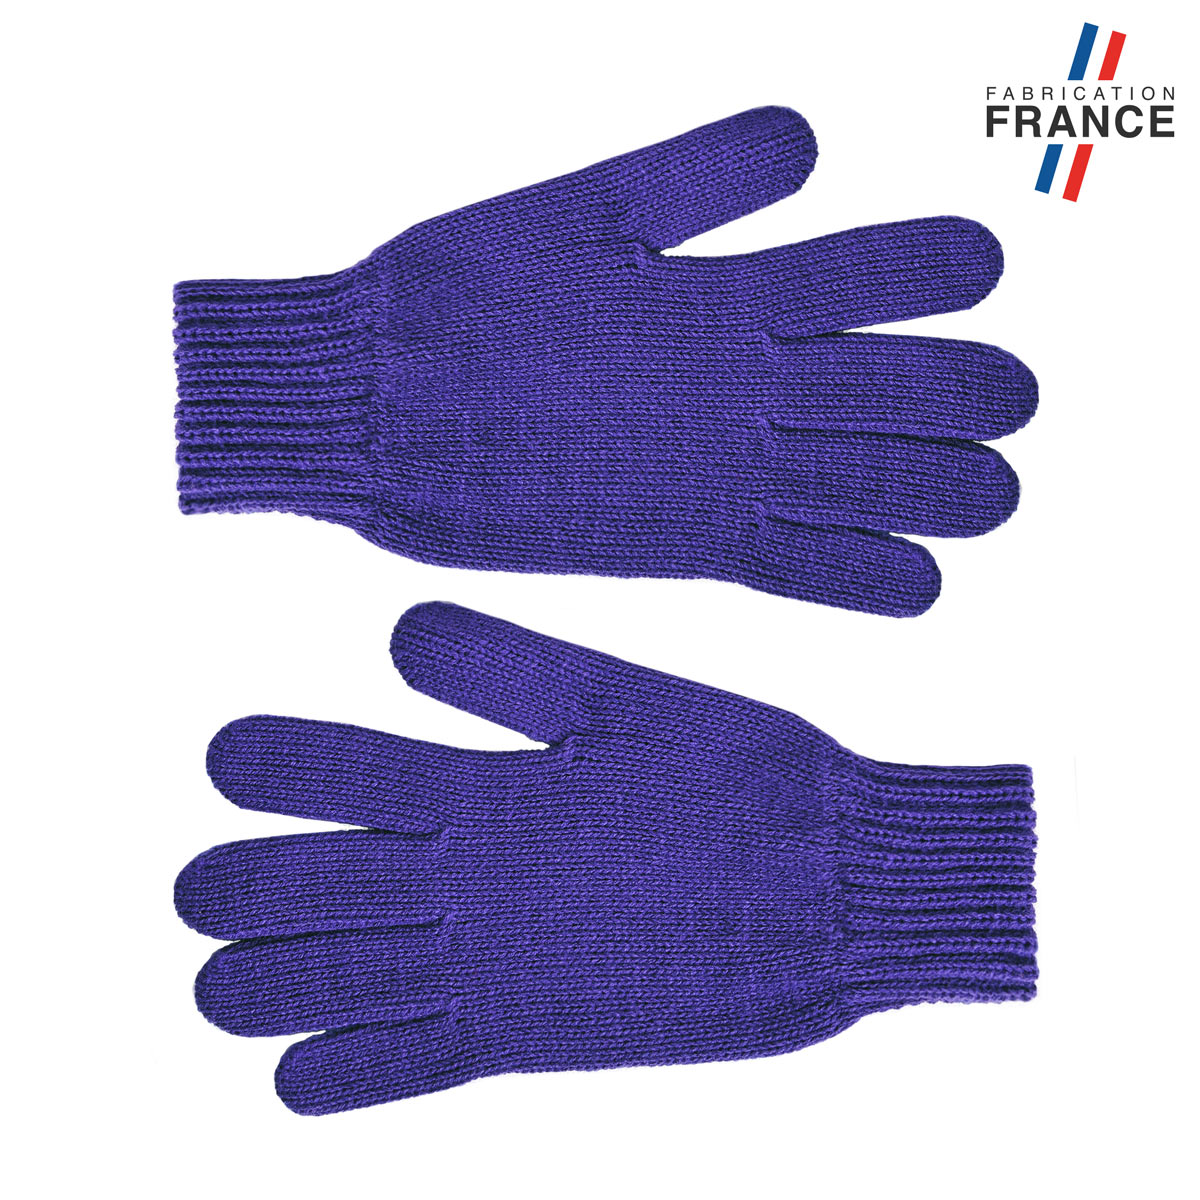 GA-00040_A12-1FR_Paire-gants-femme-uni-violet-fabriques-en-France